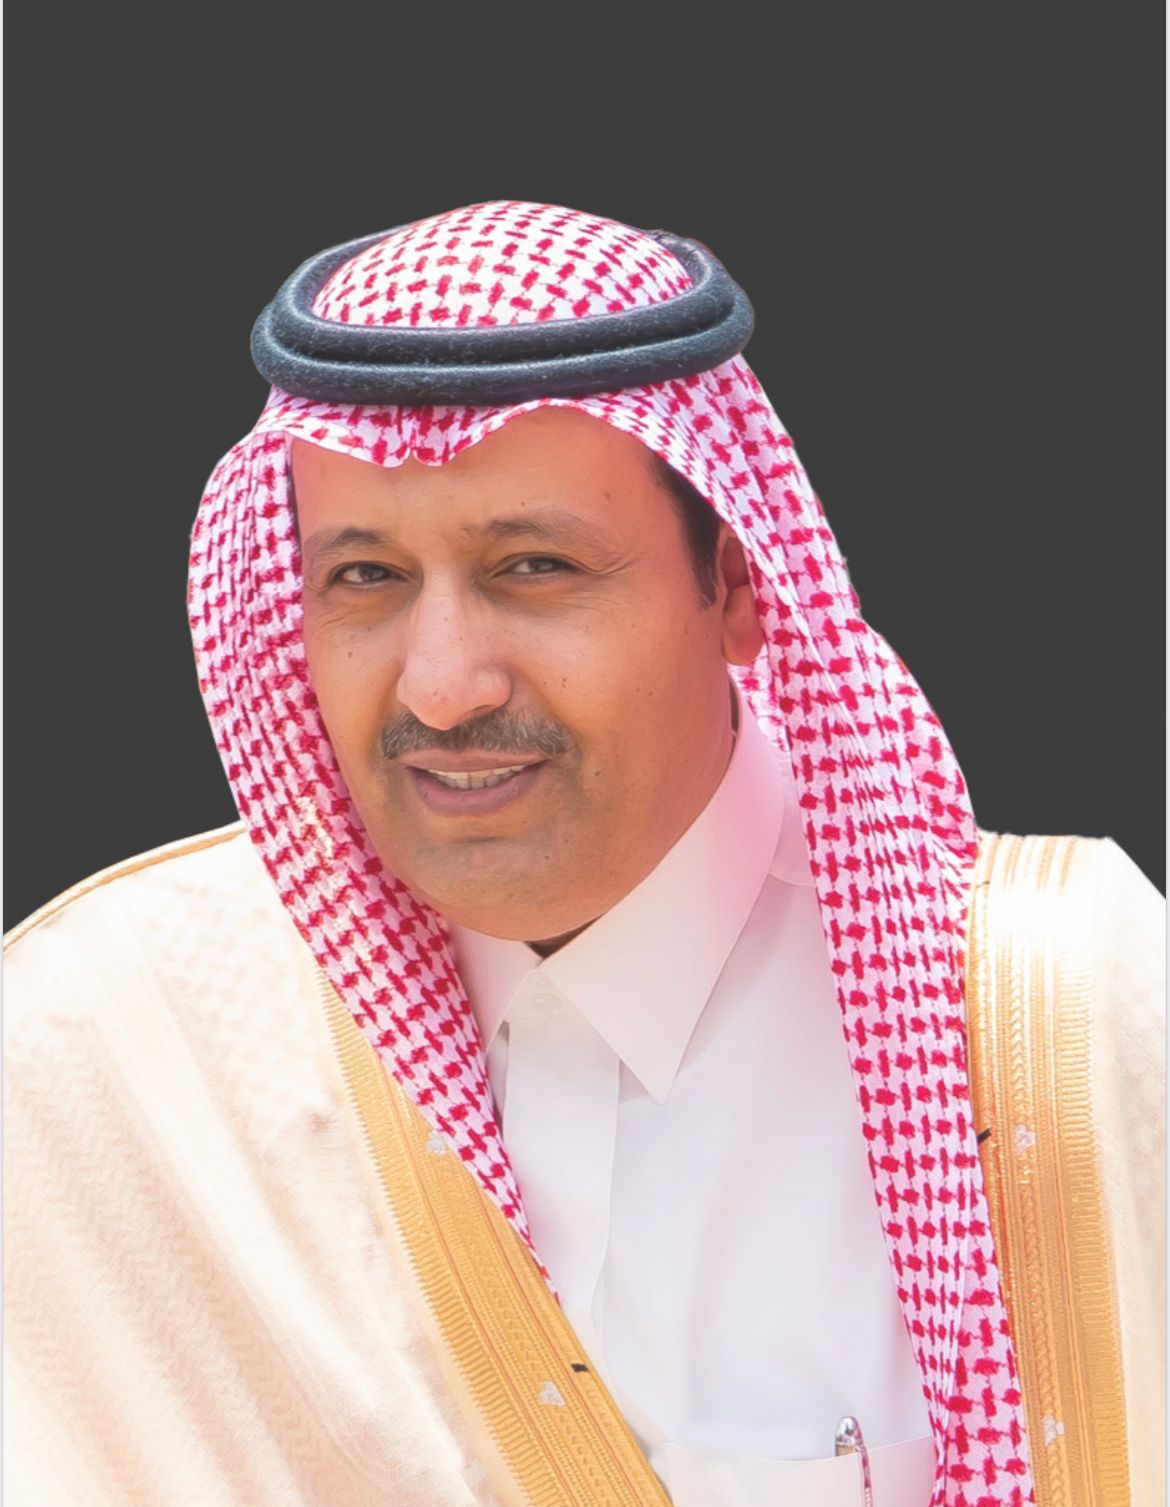 أمير منطقة الباحة : يوم التأسيس يوم اعتزاز وفخر بقيادات عظيمة لوطن شامخ